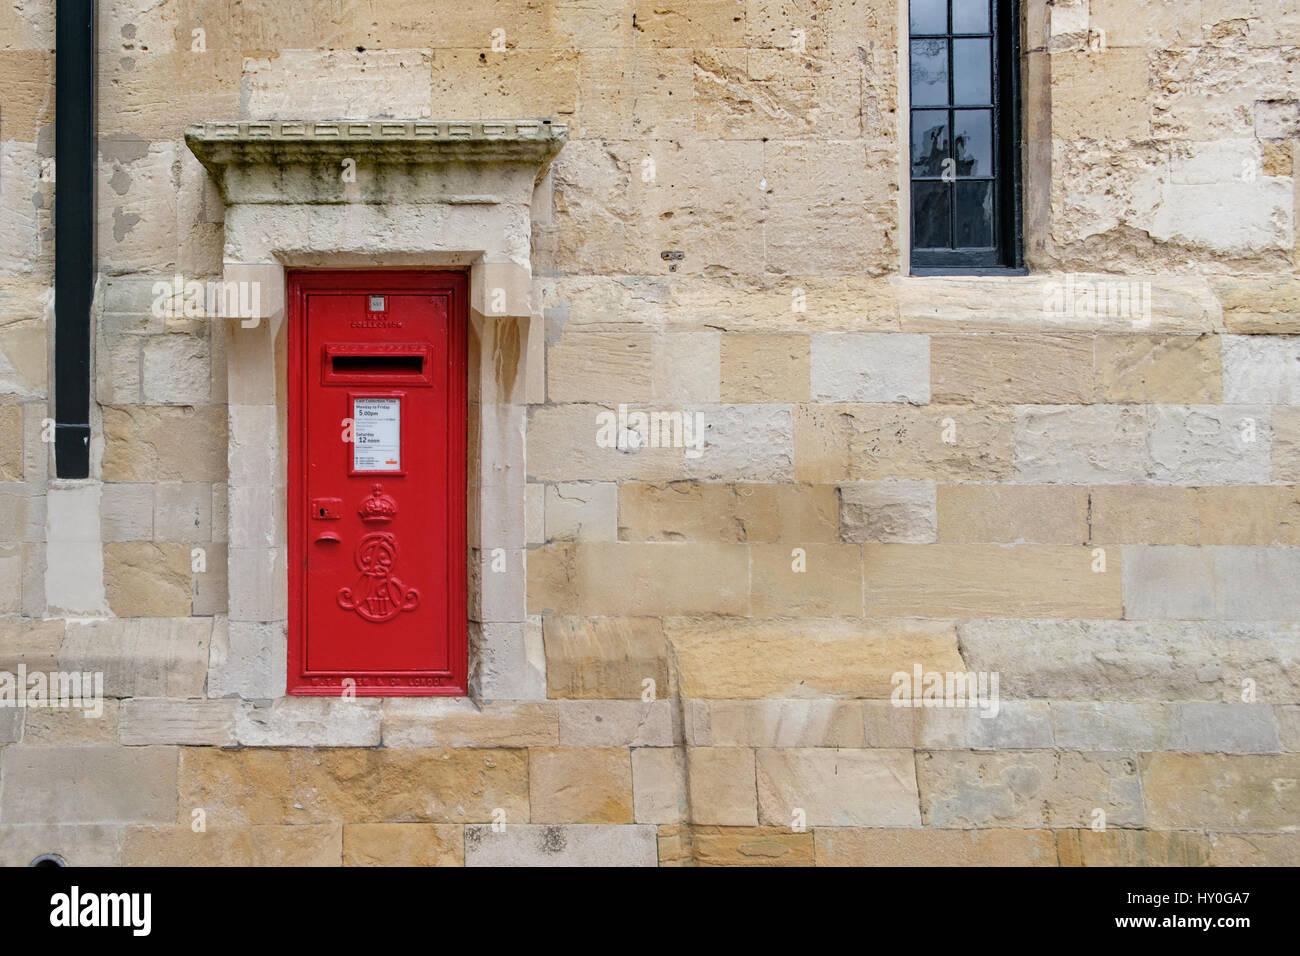 Windsor, Regno Unito - 18 marzo: un tradizionale iconico british post box in un muro di pietra nel marzo 2017. Foto Stock